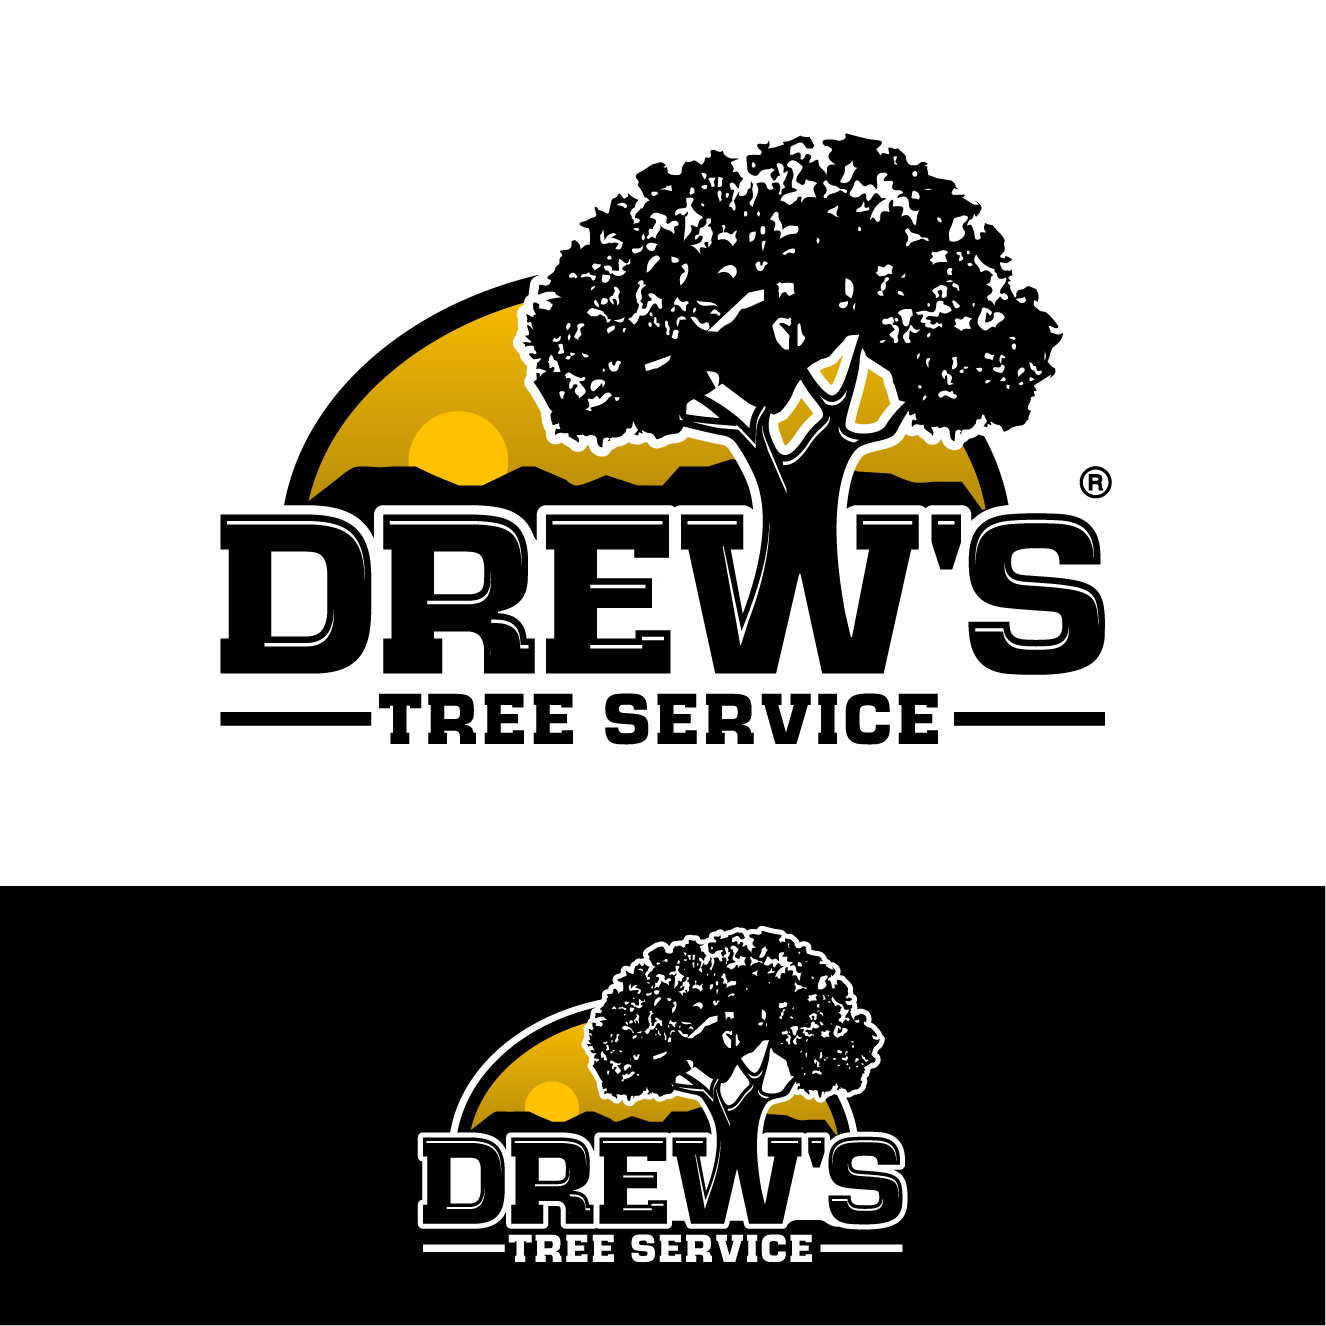 tree service logo ideas 1